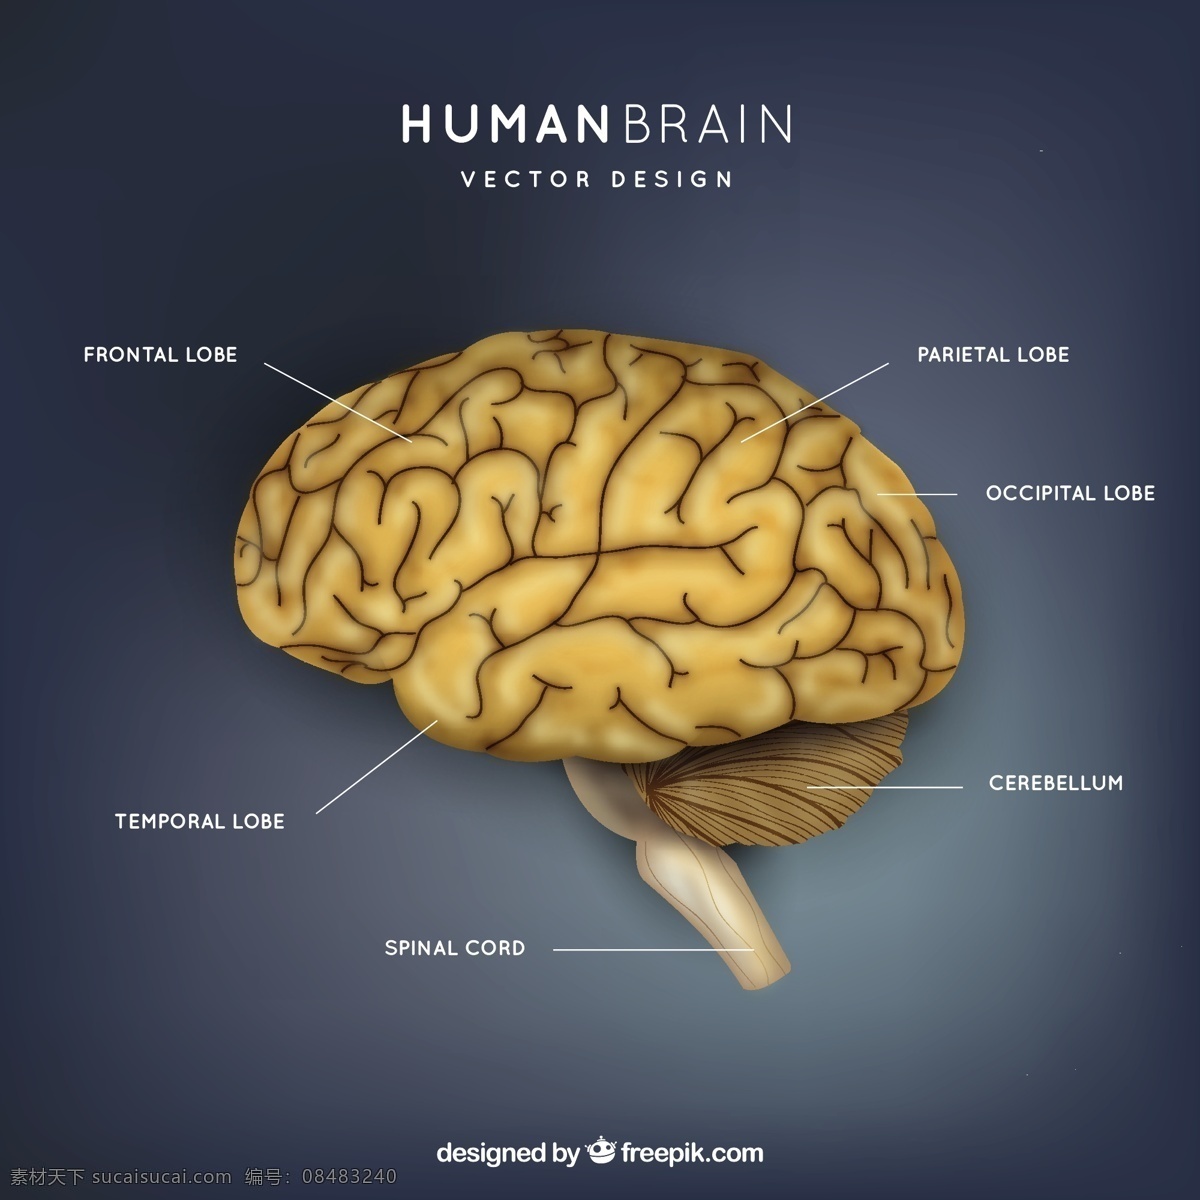 大脑插图 科学 人类 医学 研究 信息 学习 思考 插图 知识 智力 器官 智慧 人力 医药 脊髓 前腰